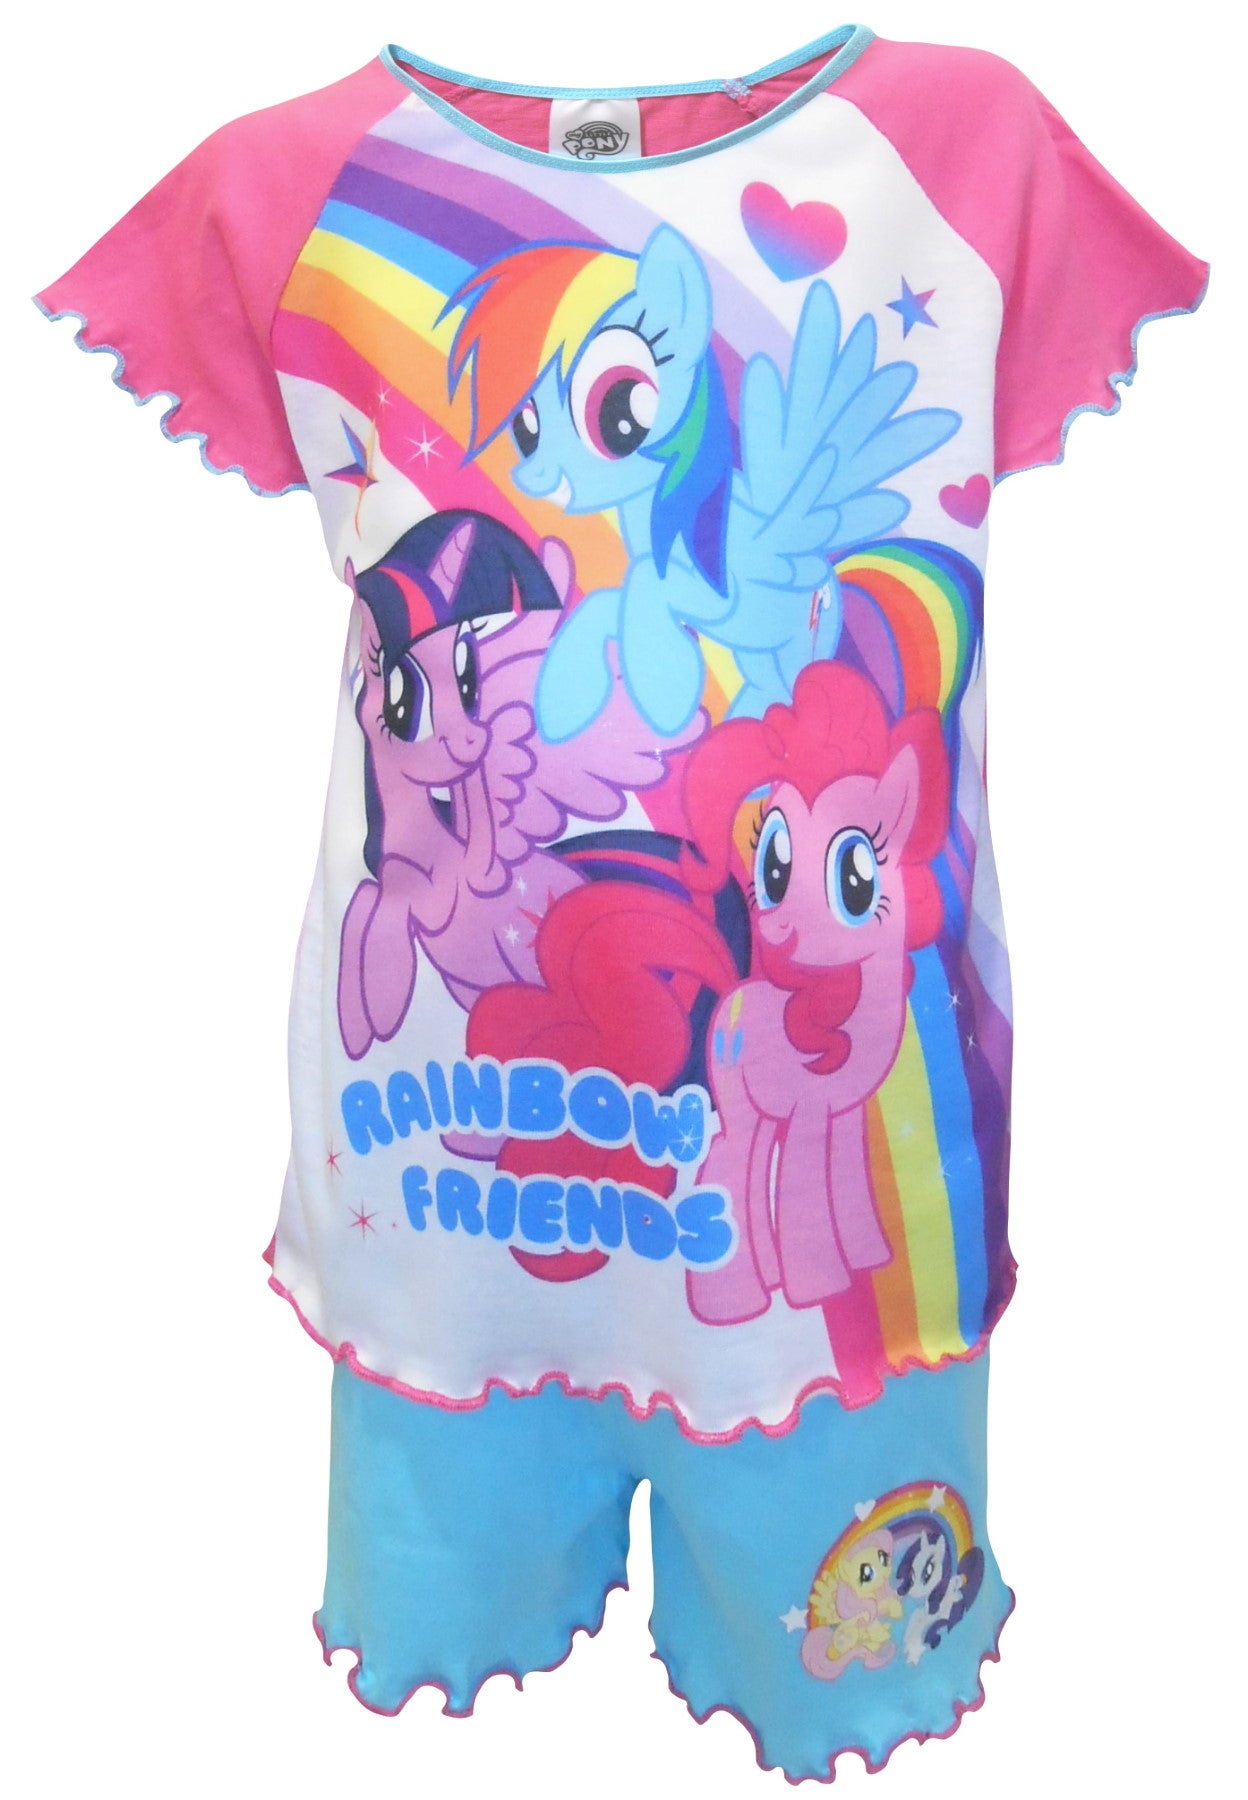 My Little Pony "Rainbow Friends" Girls Shortie Pyjamas